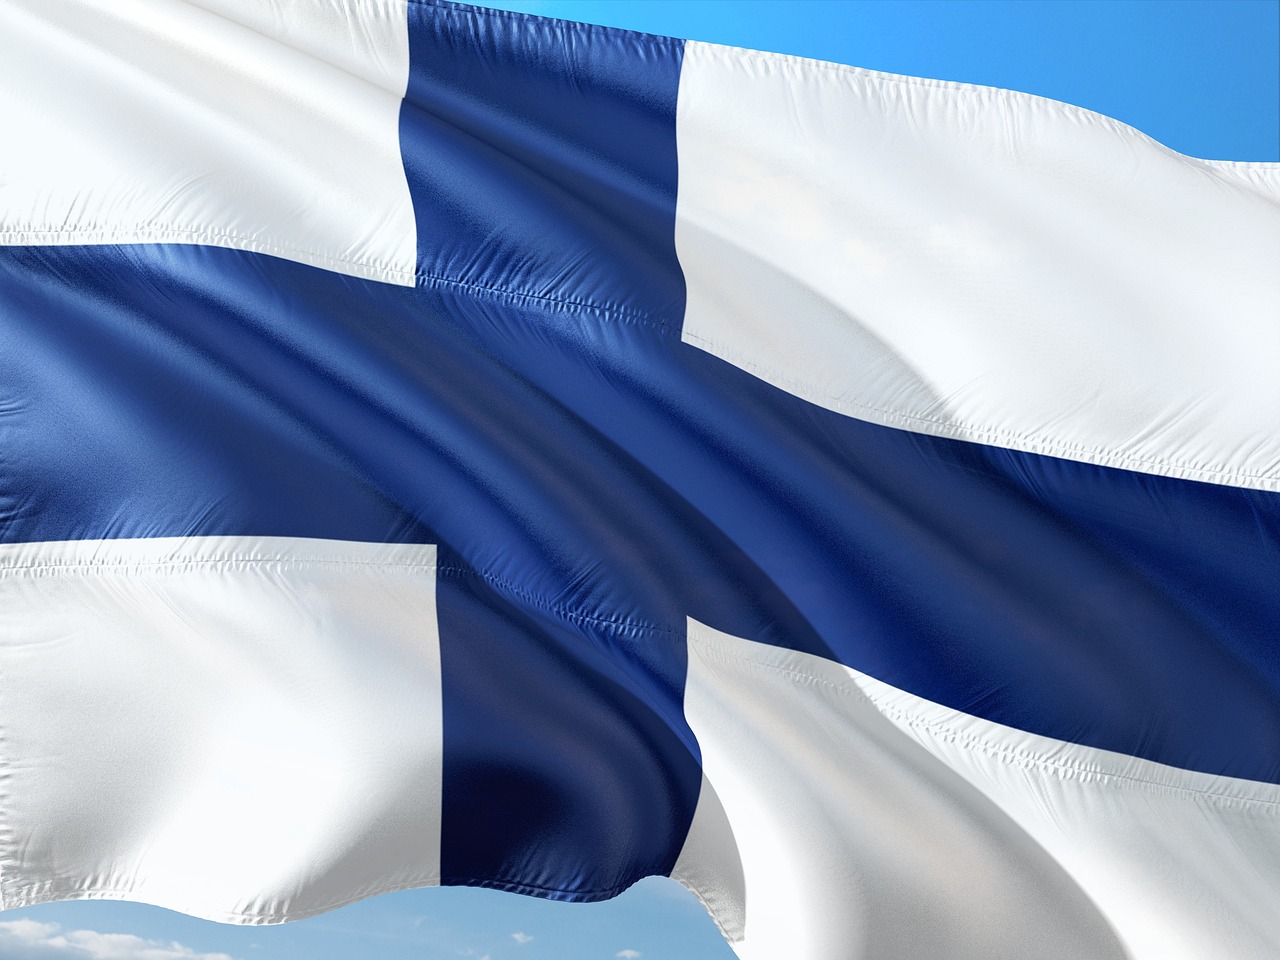 Finlands flagga.